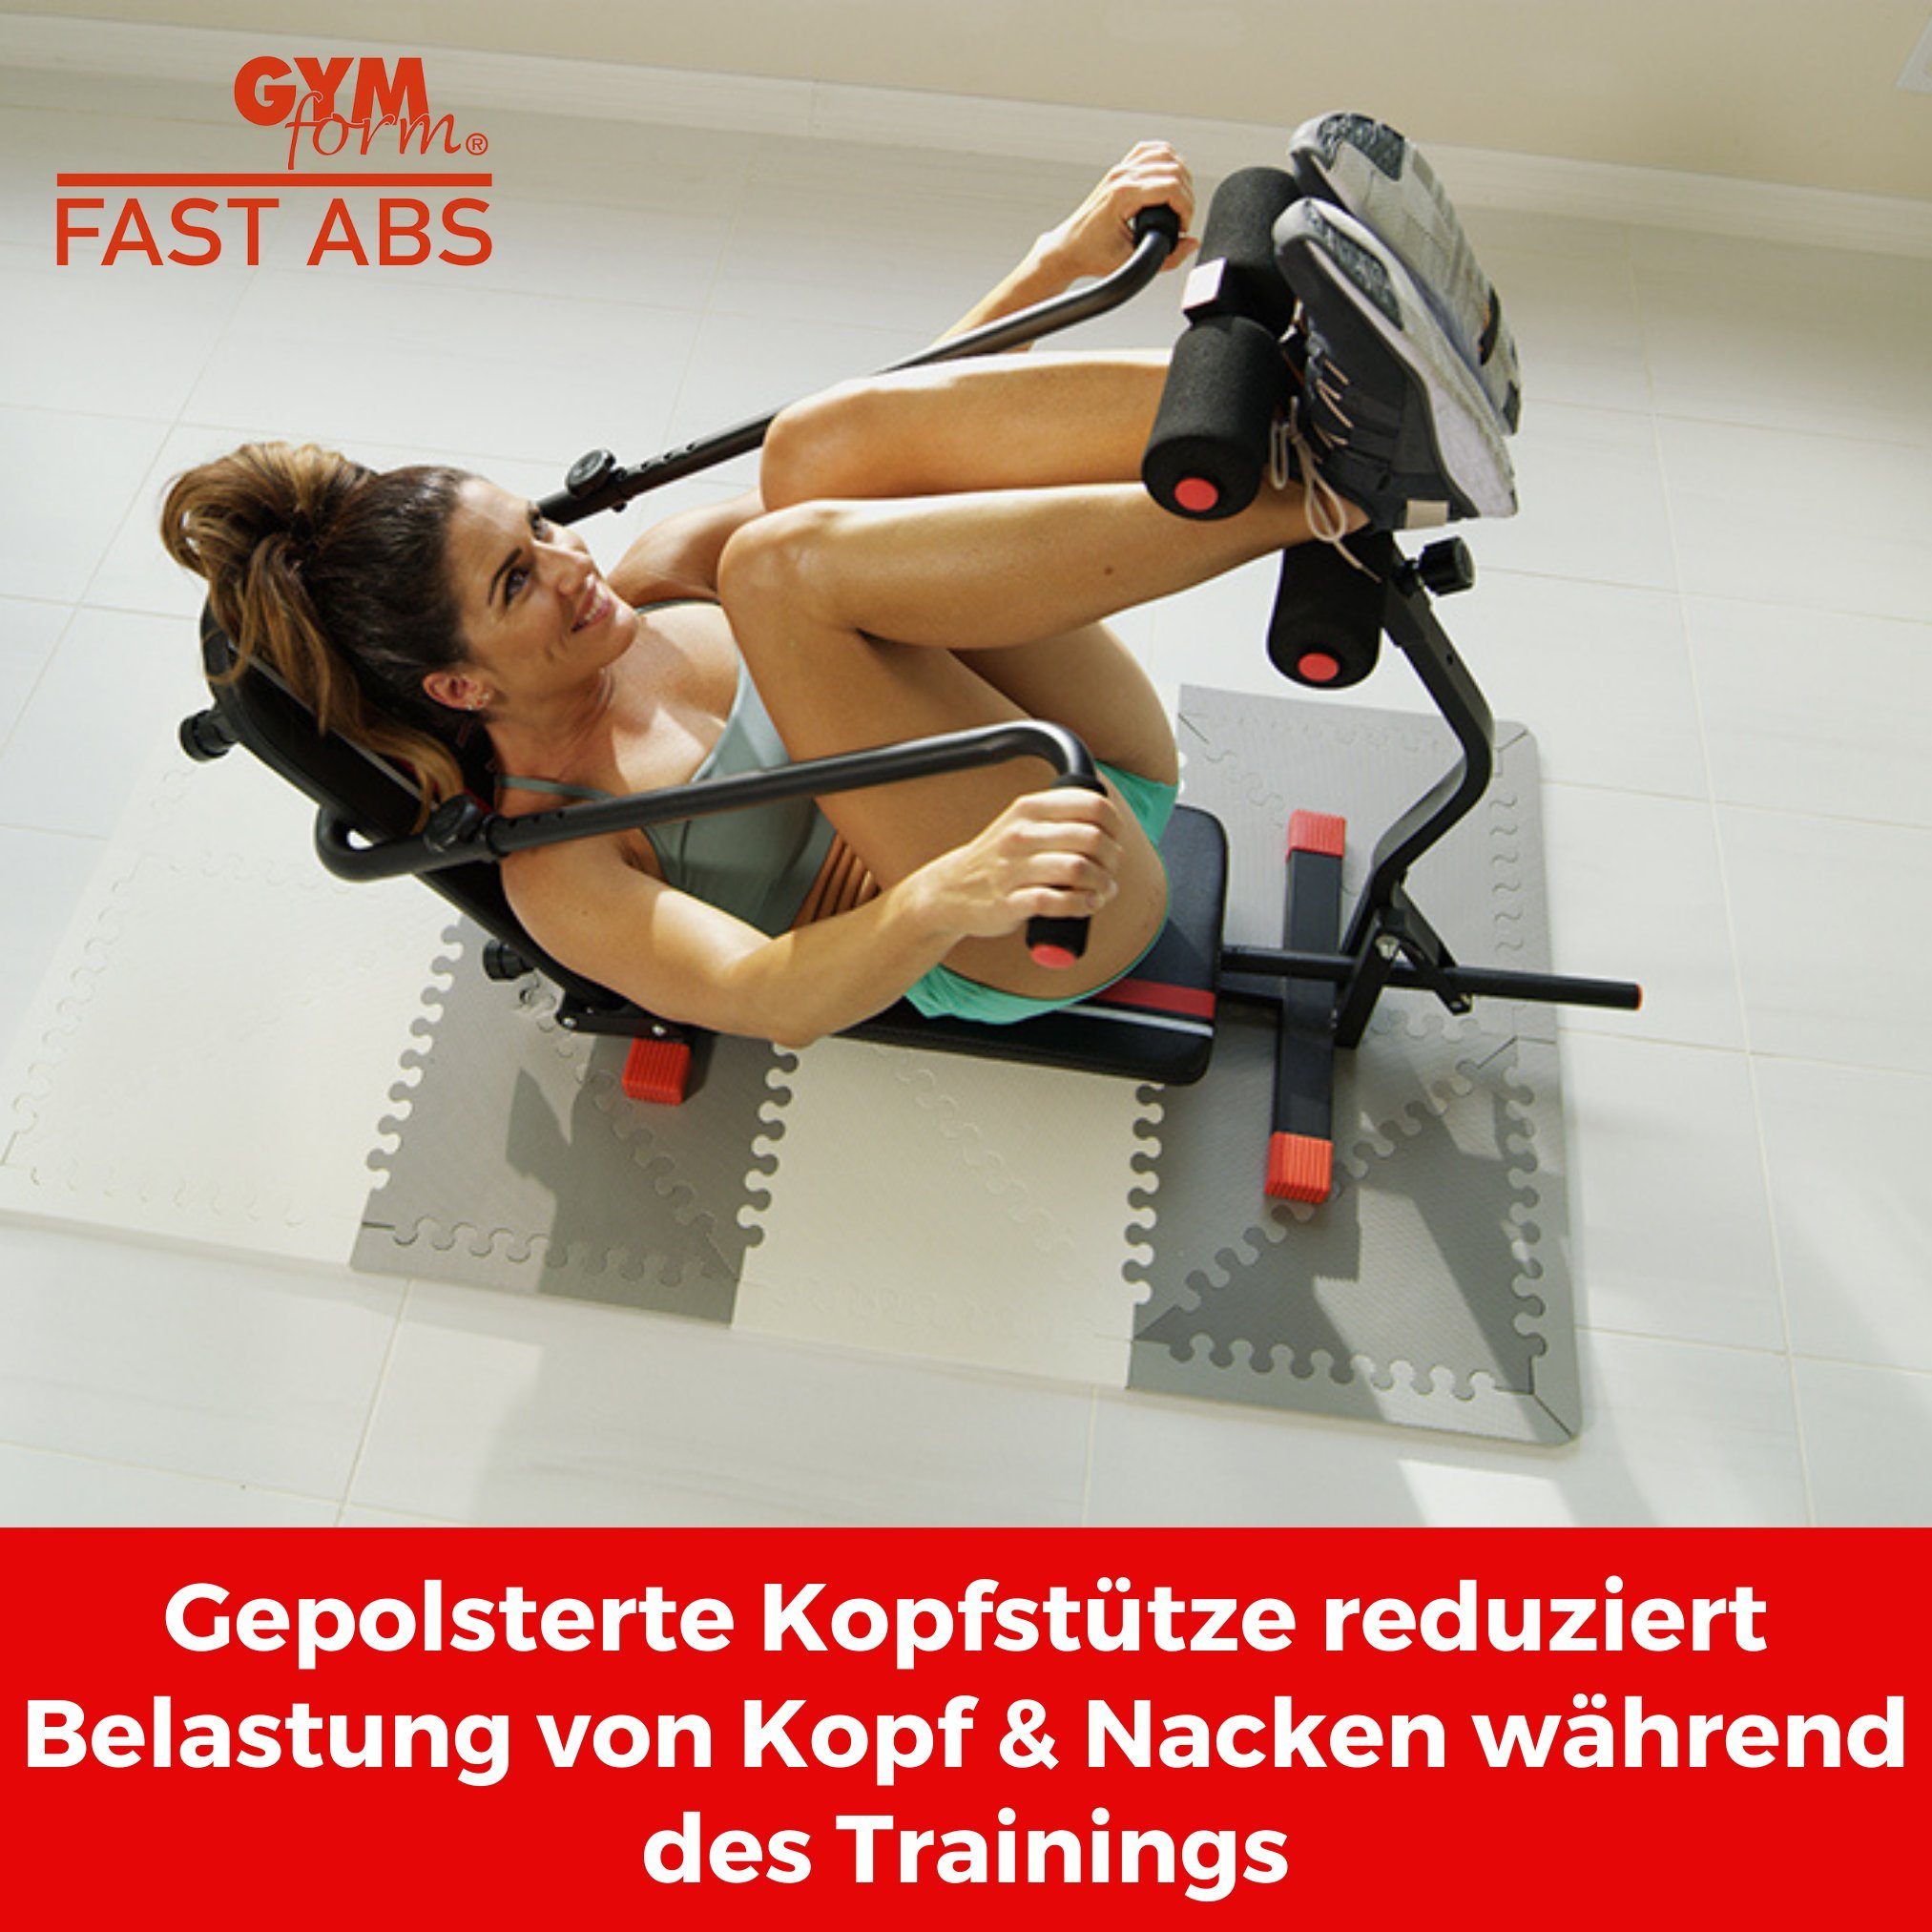 up Fast bis klappbar, Gymform® Bauchtrainer Bauchmuskeltrainer, Zuhause, Bauchtrainer Bank Sit Abs 120kg Fitnessgerät